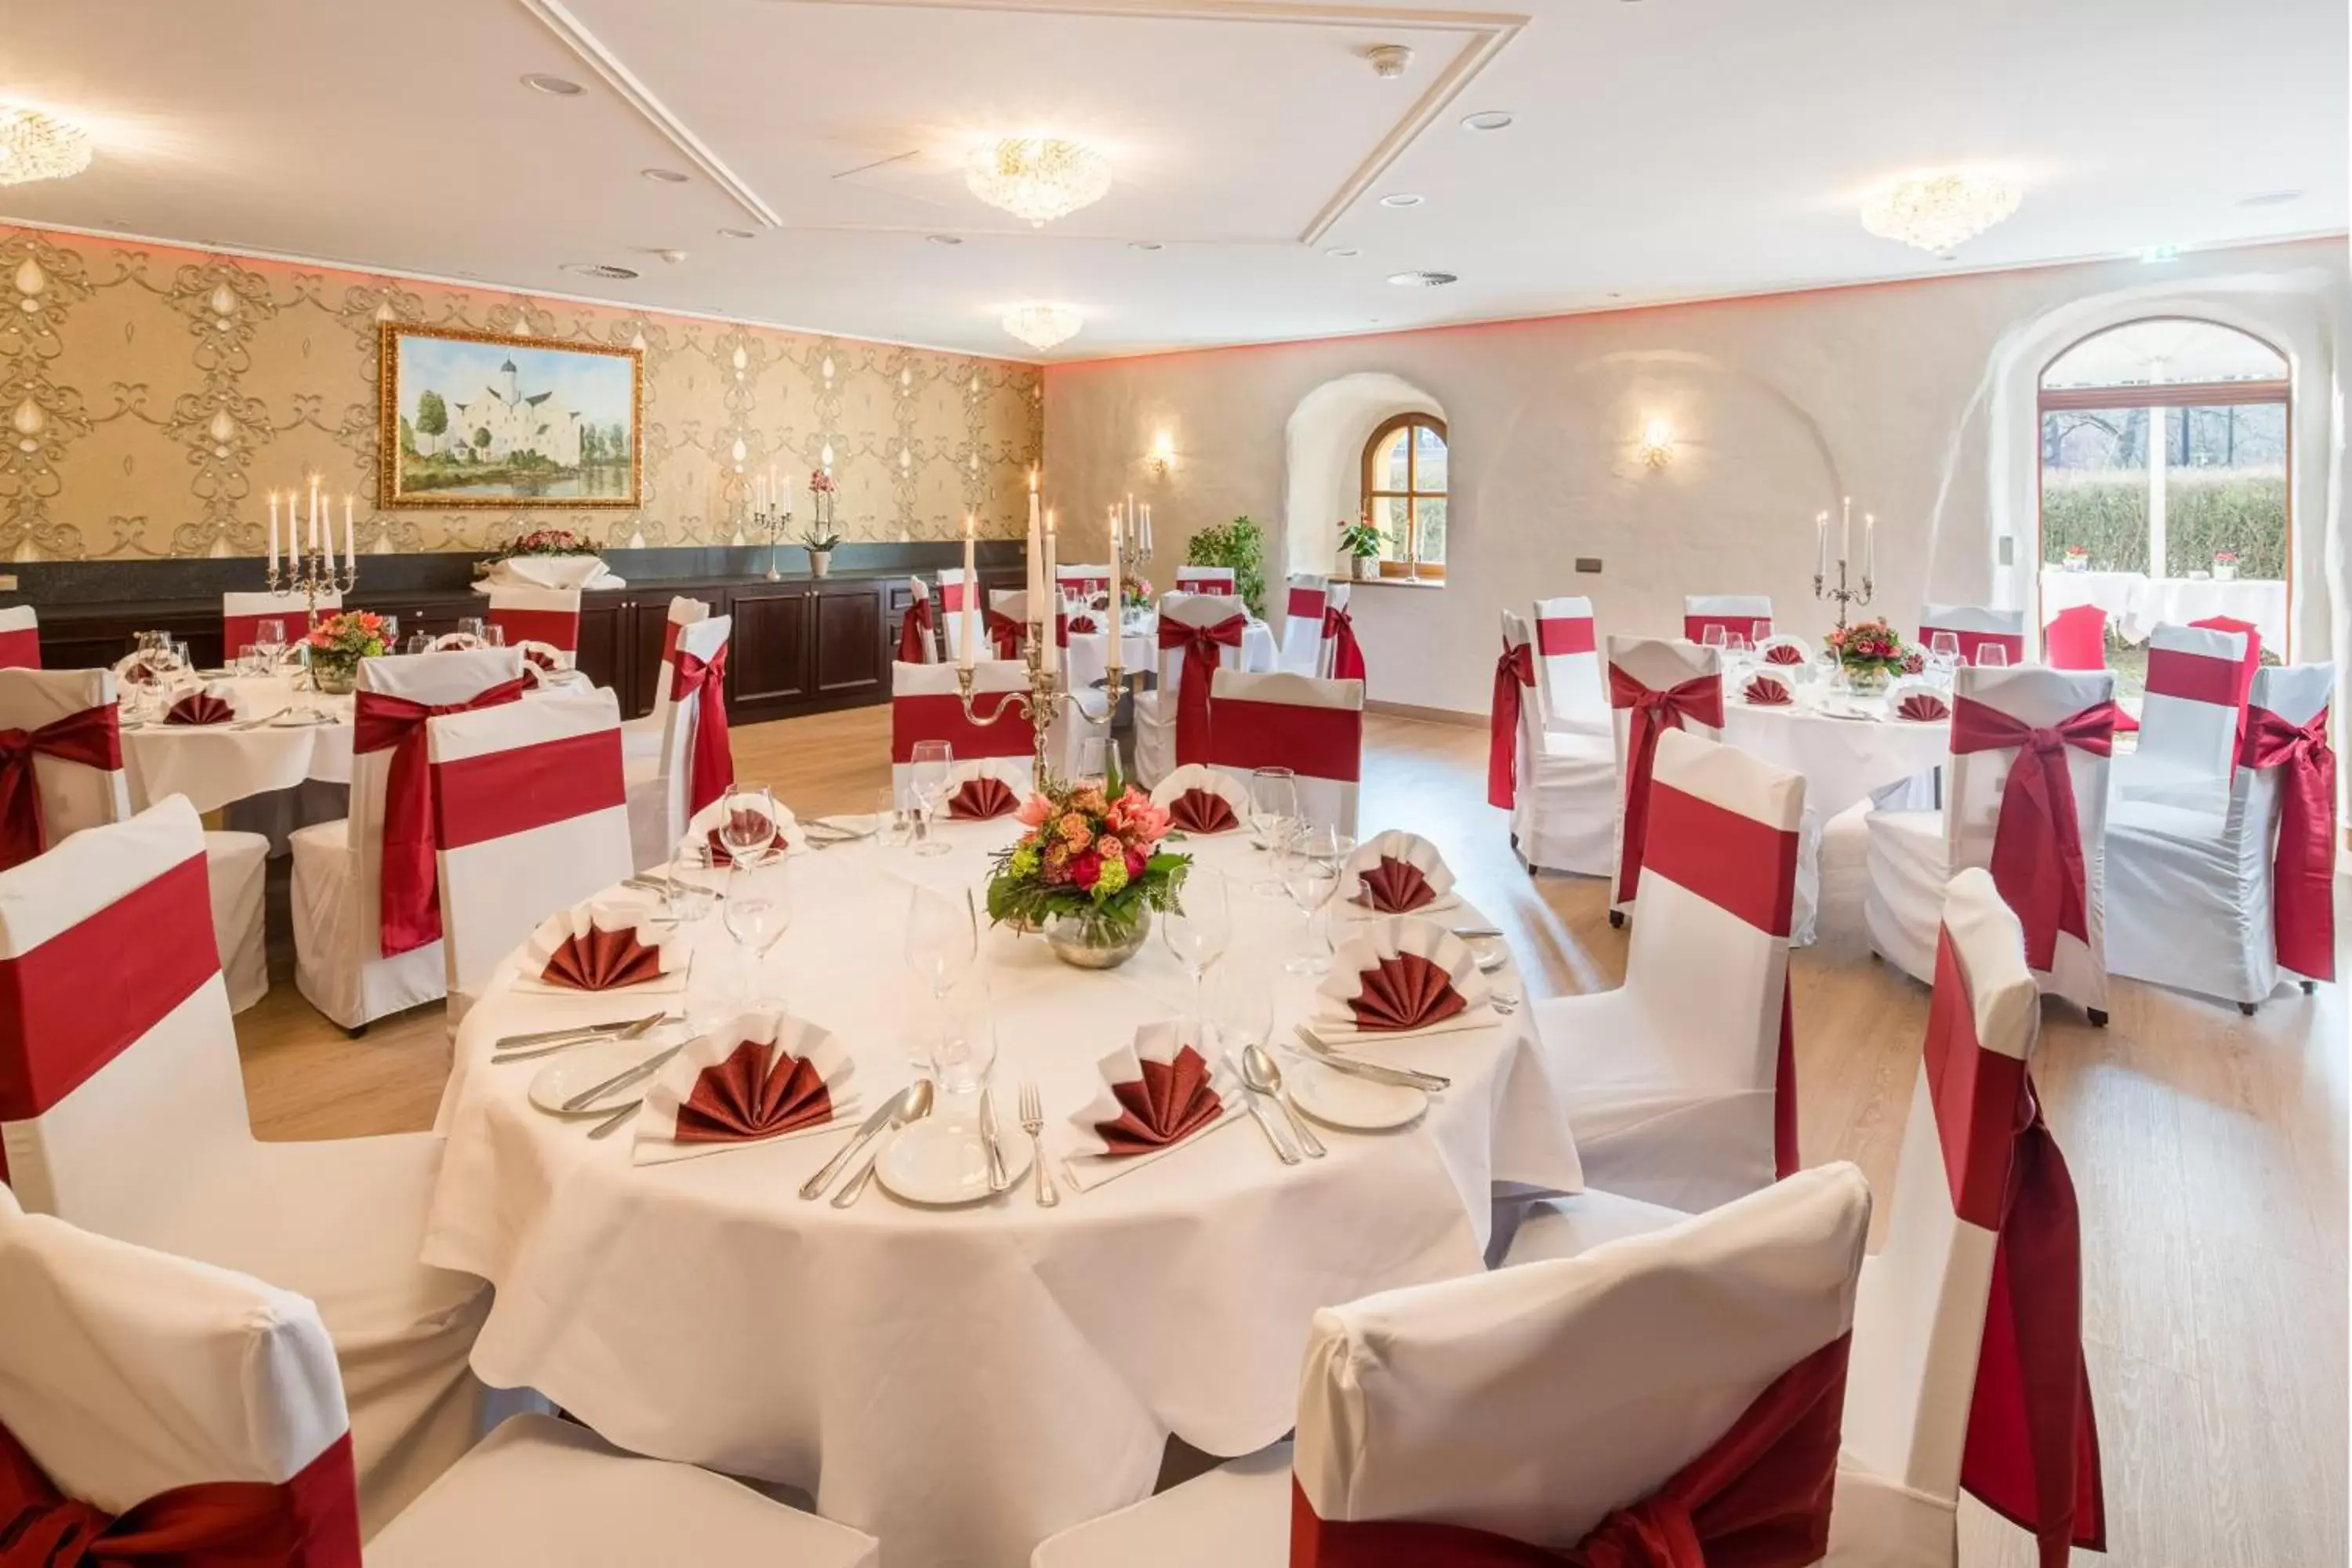 Banquet/Function facilities, Banquet Facilities in Schlosshotel Klaffenbach